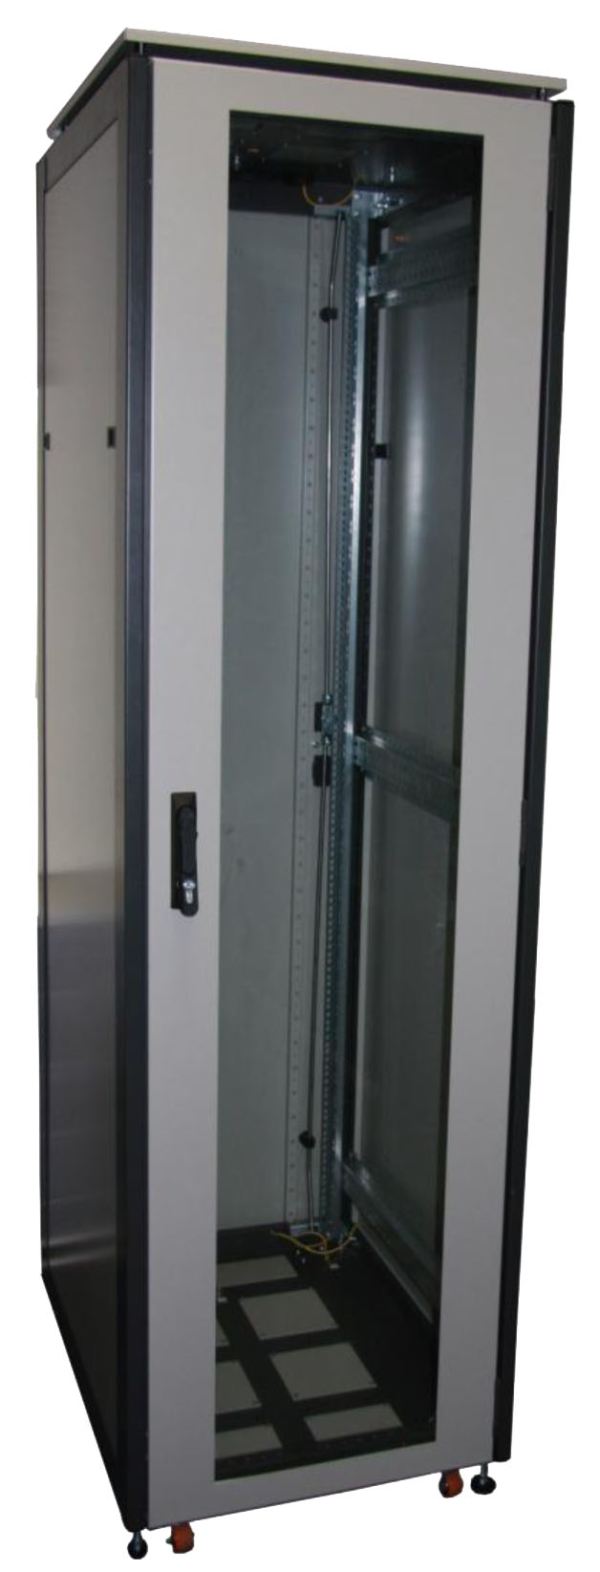 ССКТБ ТОМАСС ШТК-8620Э-04 - шкаф телекоммуникационный 19", 42U, 800х600х2000 мм, с двумя металлическими дверьми